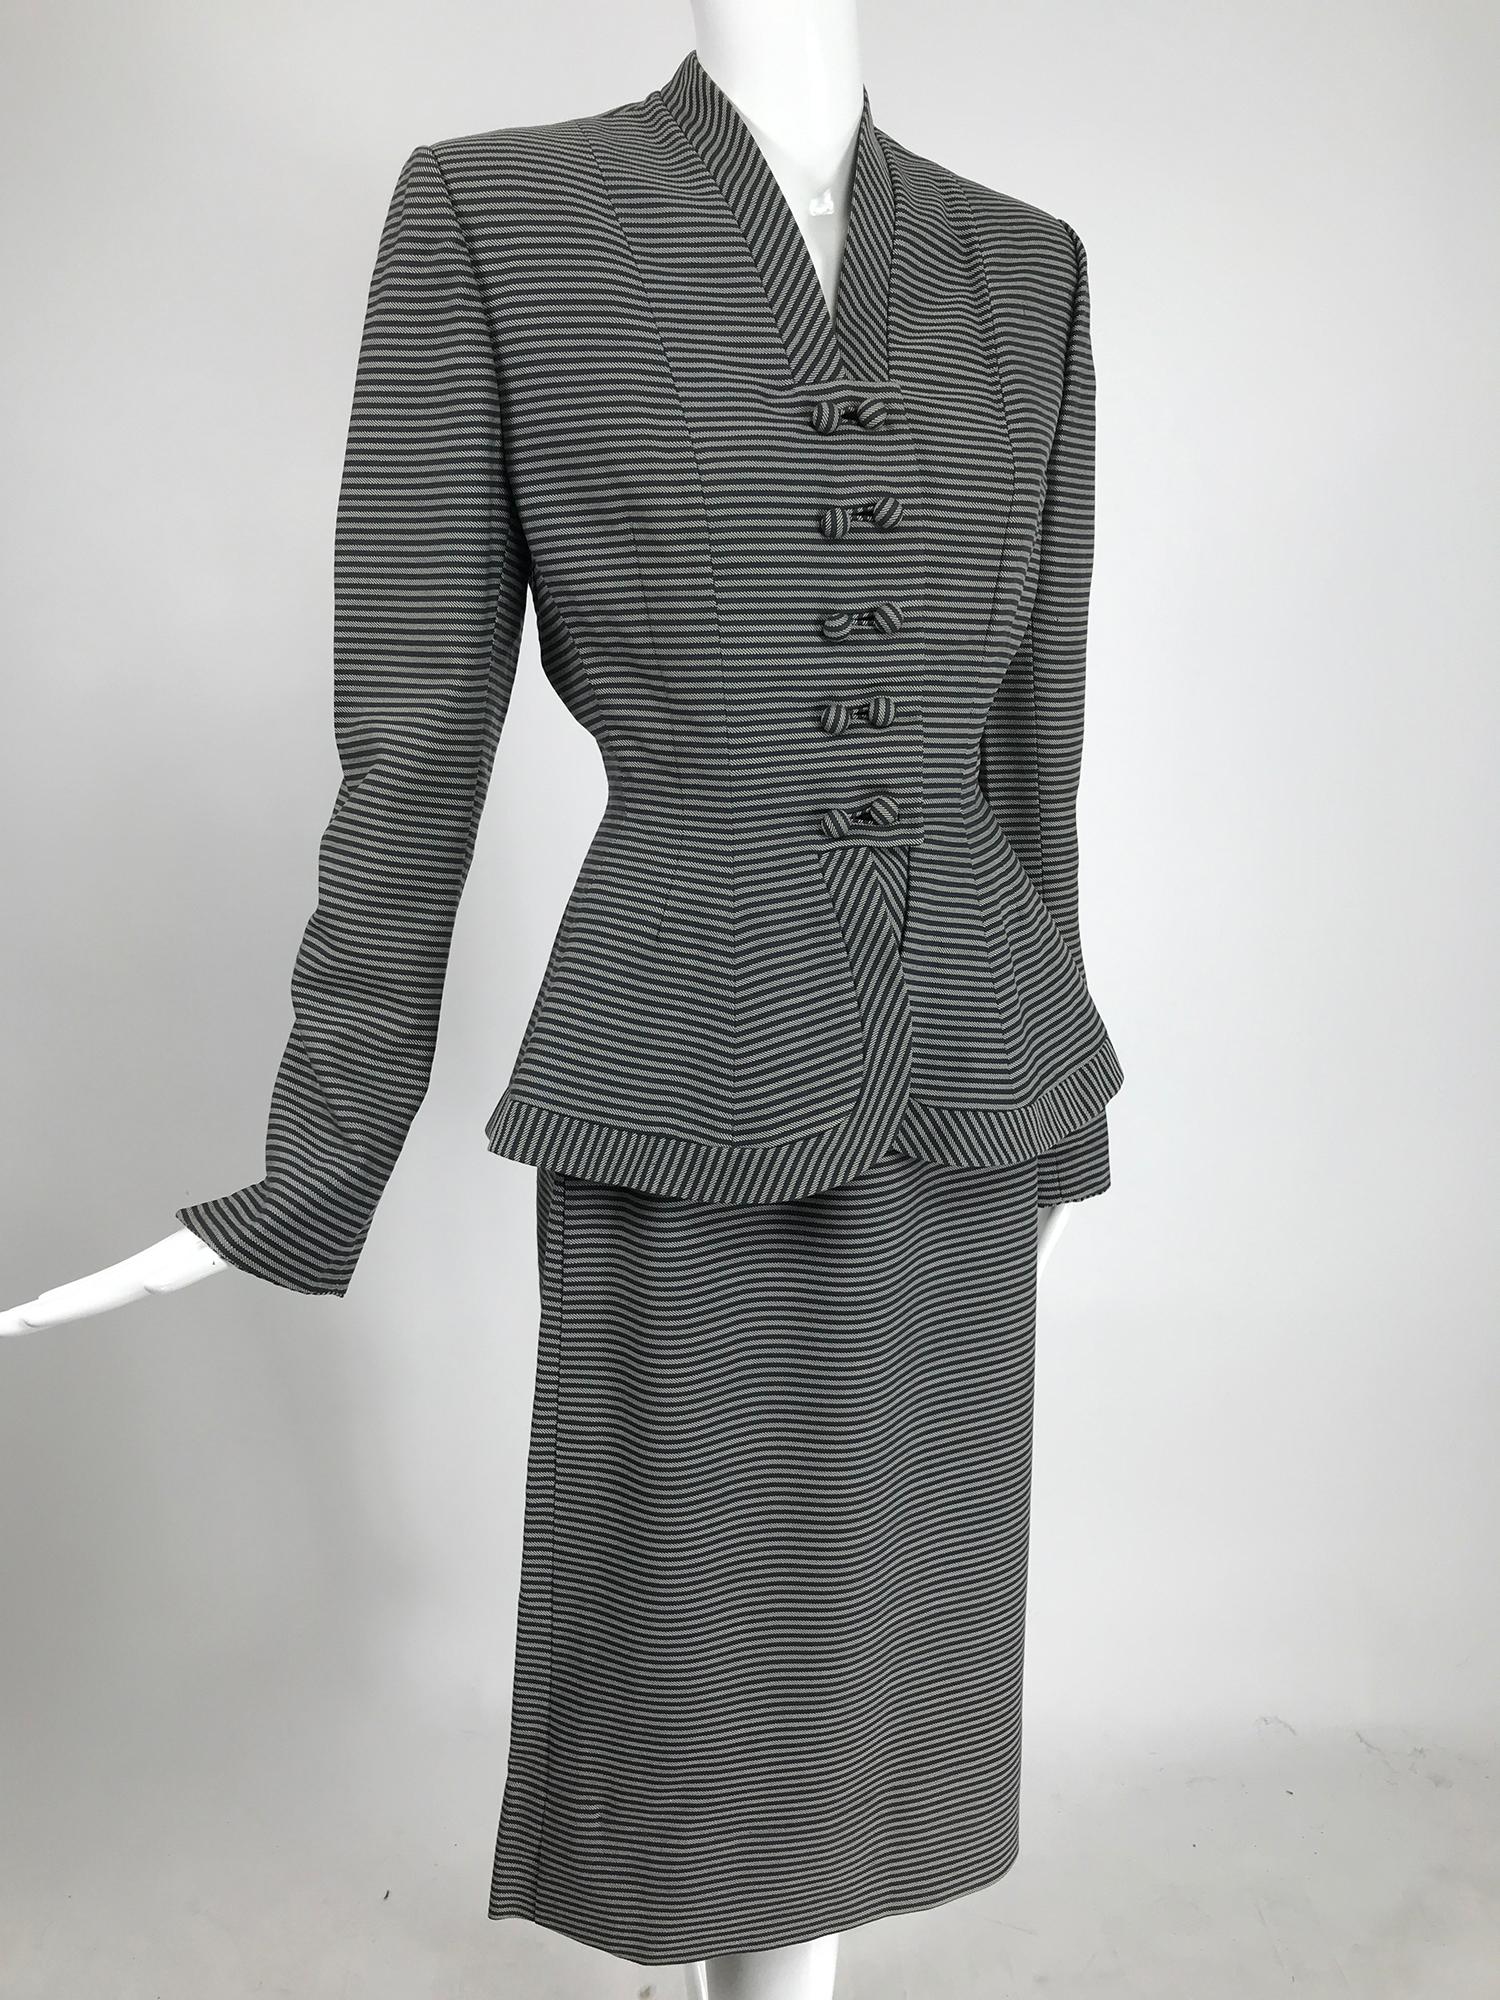 Combinaison jupe en laine à rayures noires et blanches Lilli Ann des années 1940. Costume élégant, la veste fait un clin d'œil au costume Bar de Christian Dior. Cette veste est vraiment superbe avec ses étroites rayures horizontales noires et